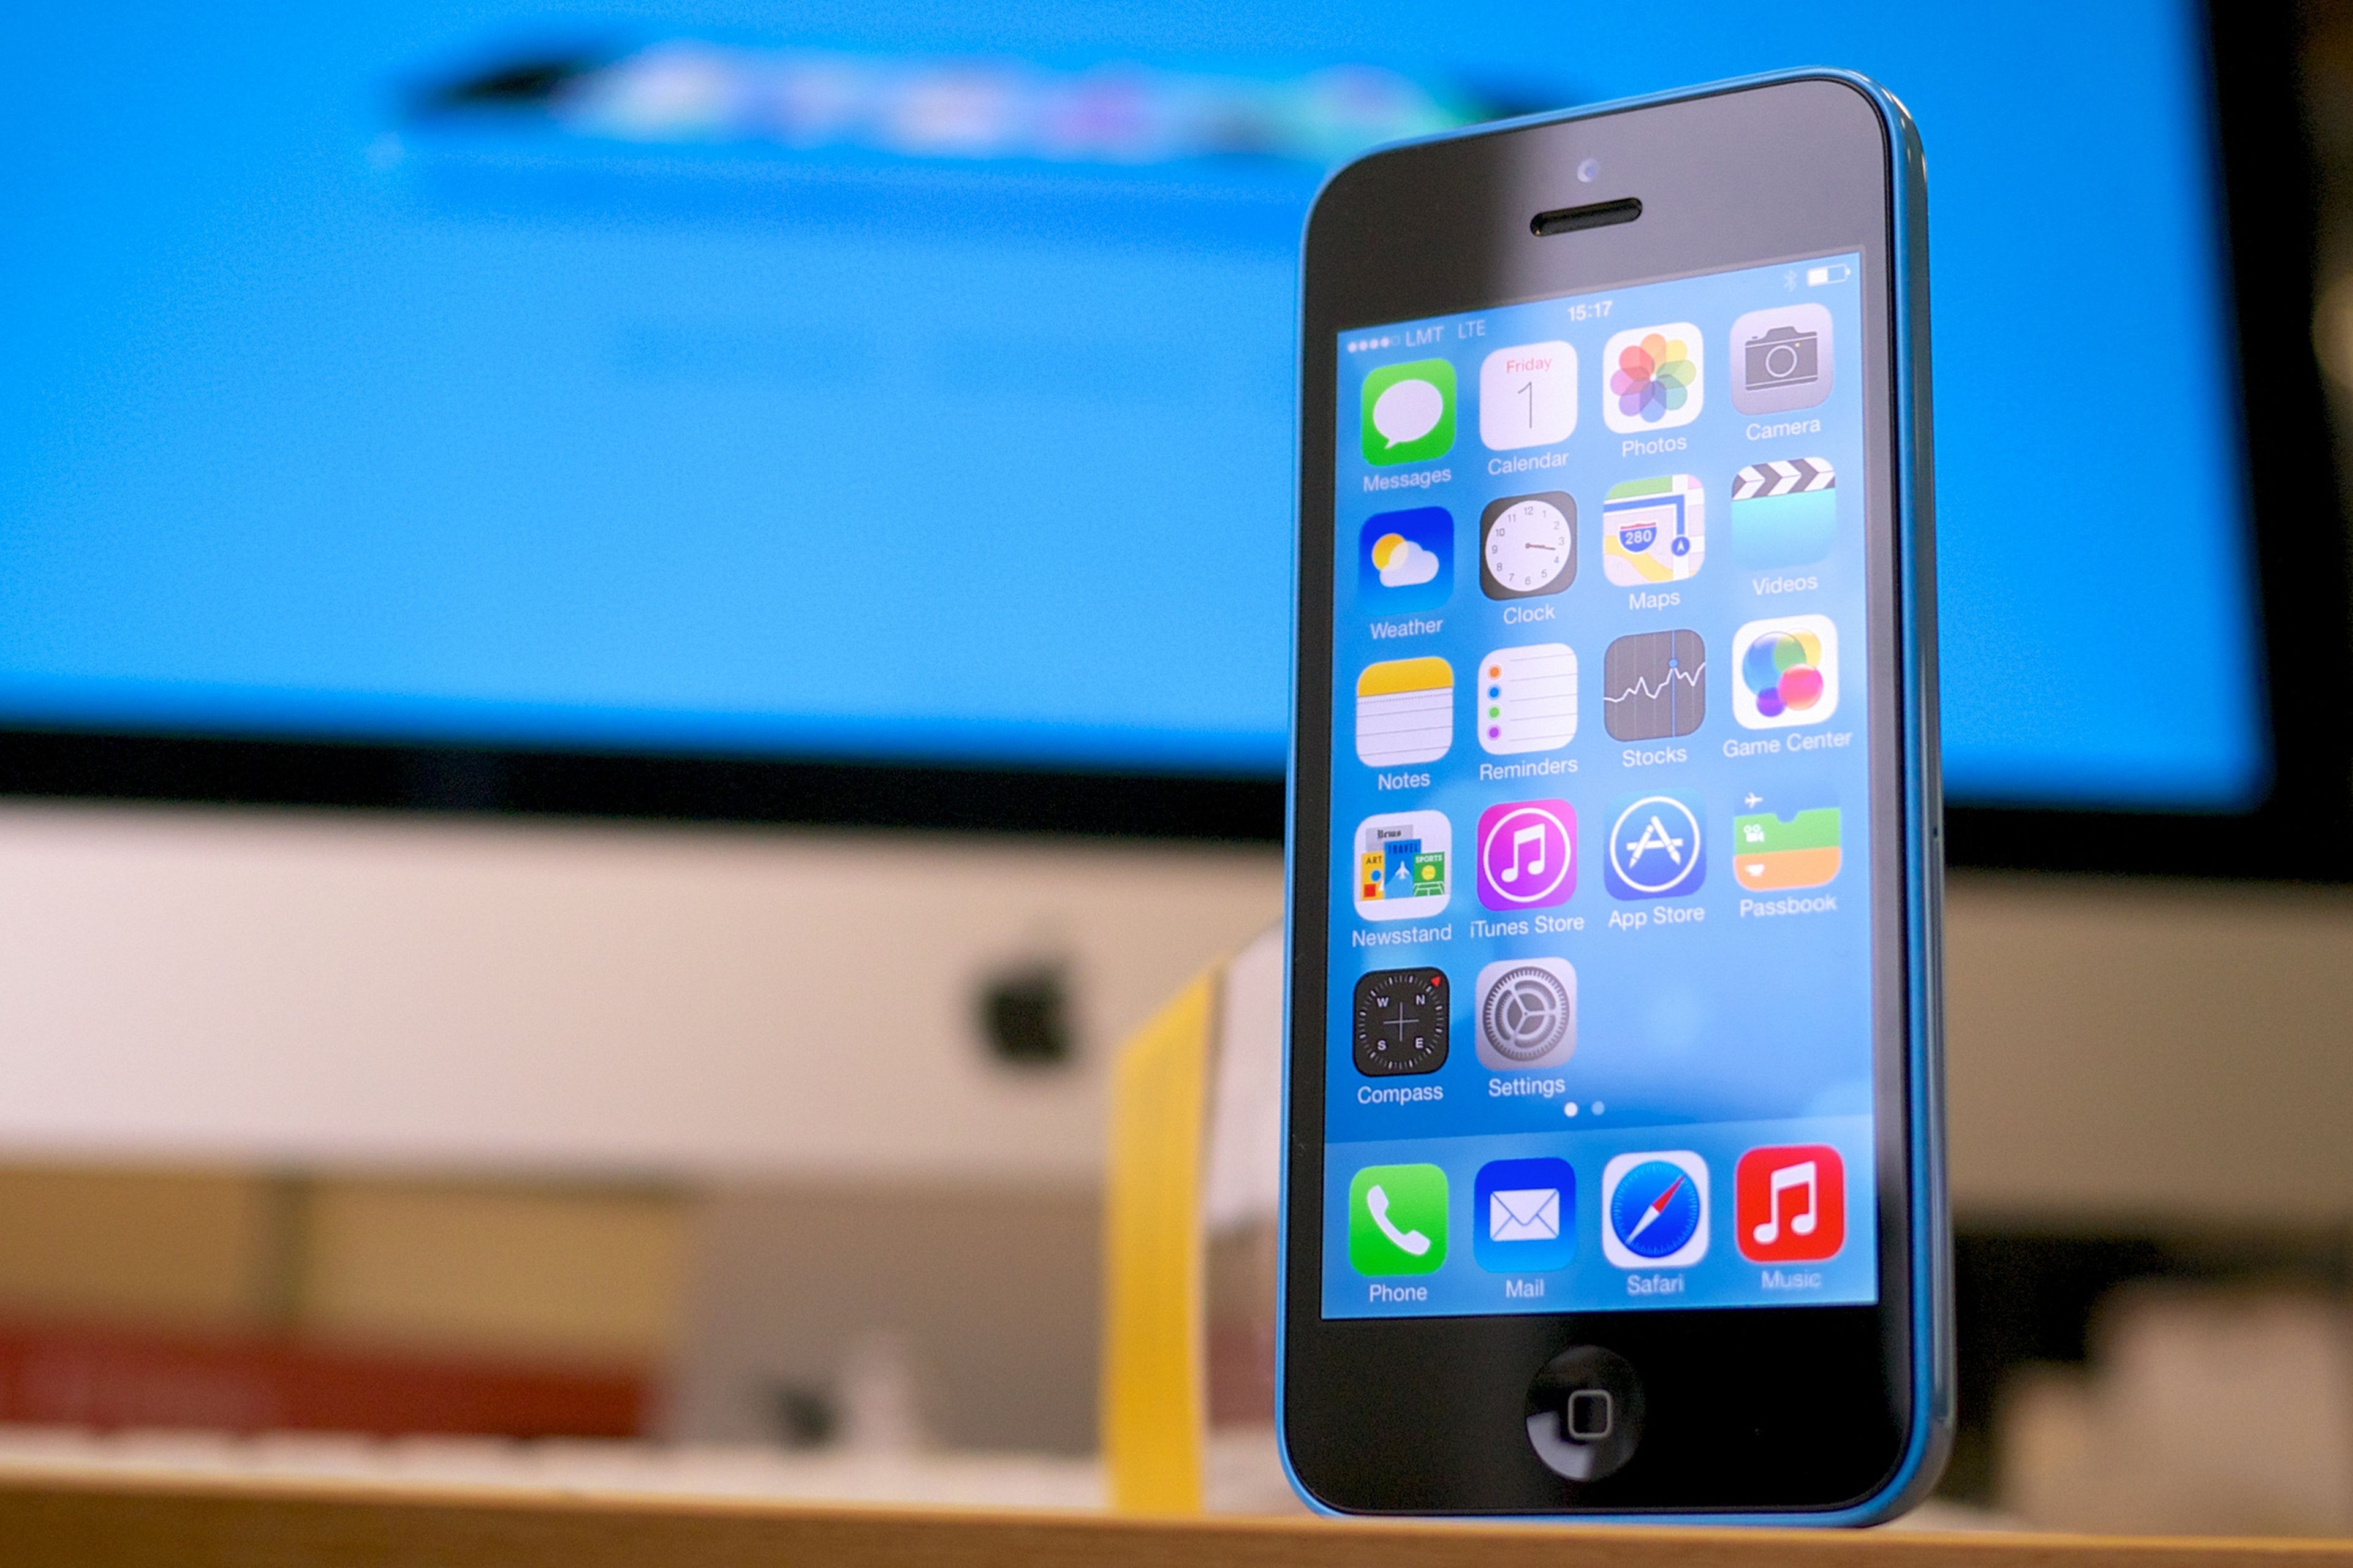 El iPhone 5C fue un gran éxito de Apple al conseguir rebajar el precio al contar con acabados traseros de policarbonato, incorporar iOS 7 mejorar la cámara de fotos. - 6